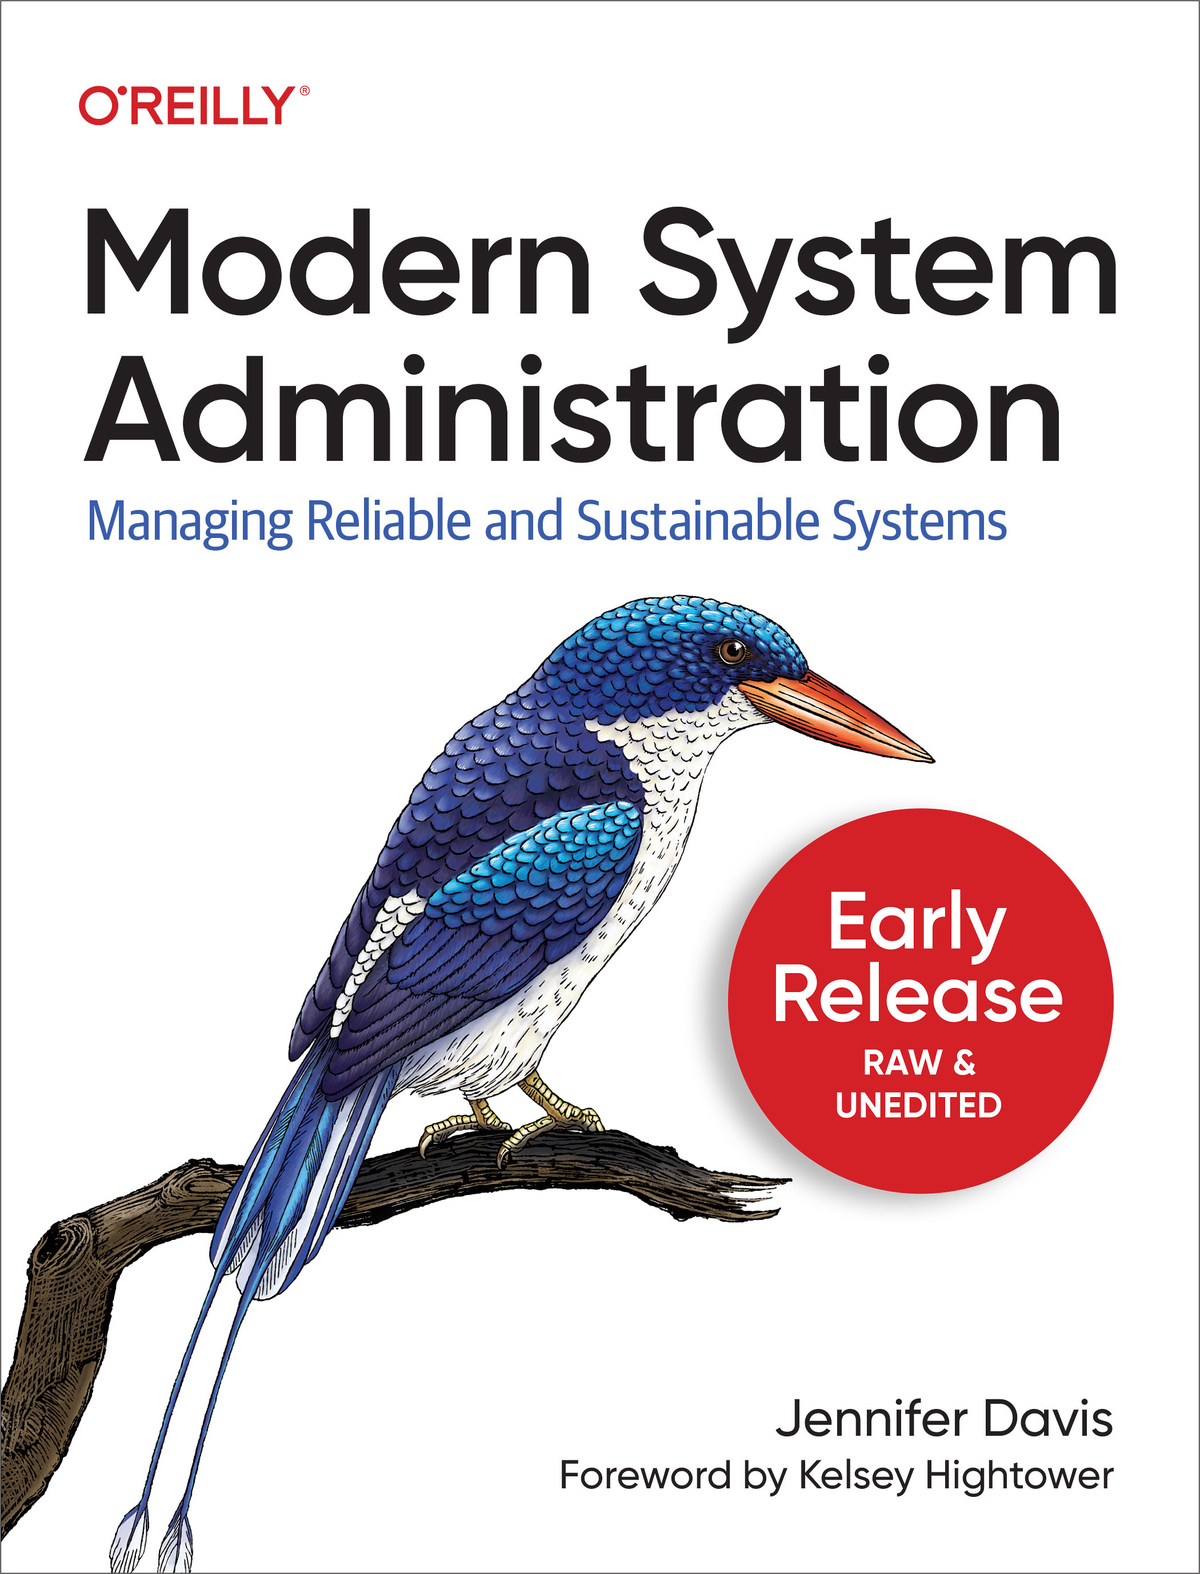 Modern System Administration by Jennifer Davis Copyright 2020 Jennifer Davis - photo 1